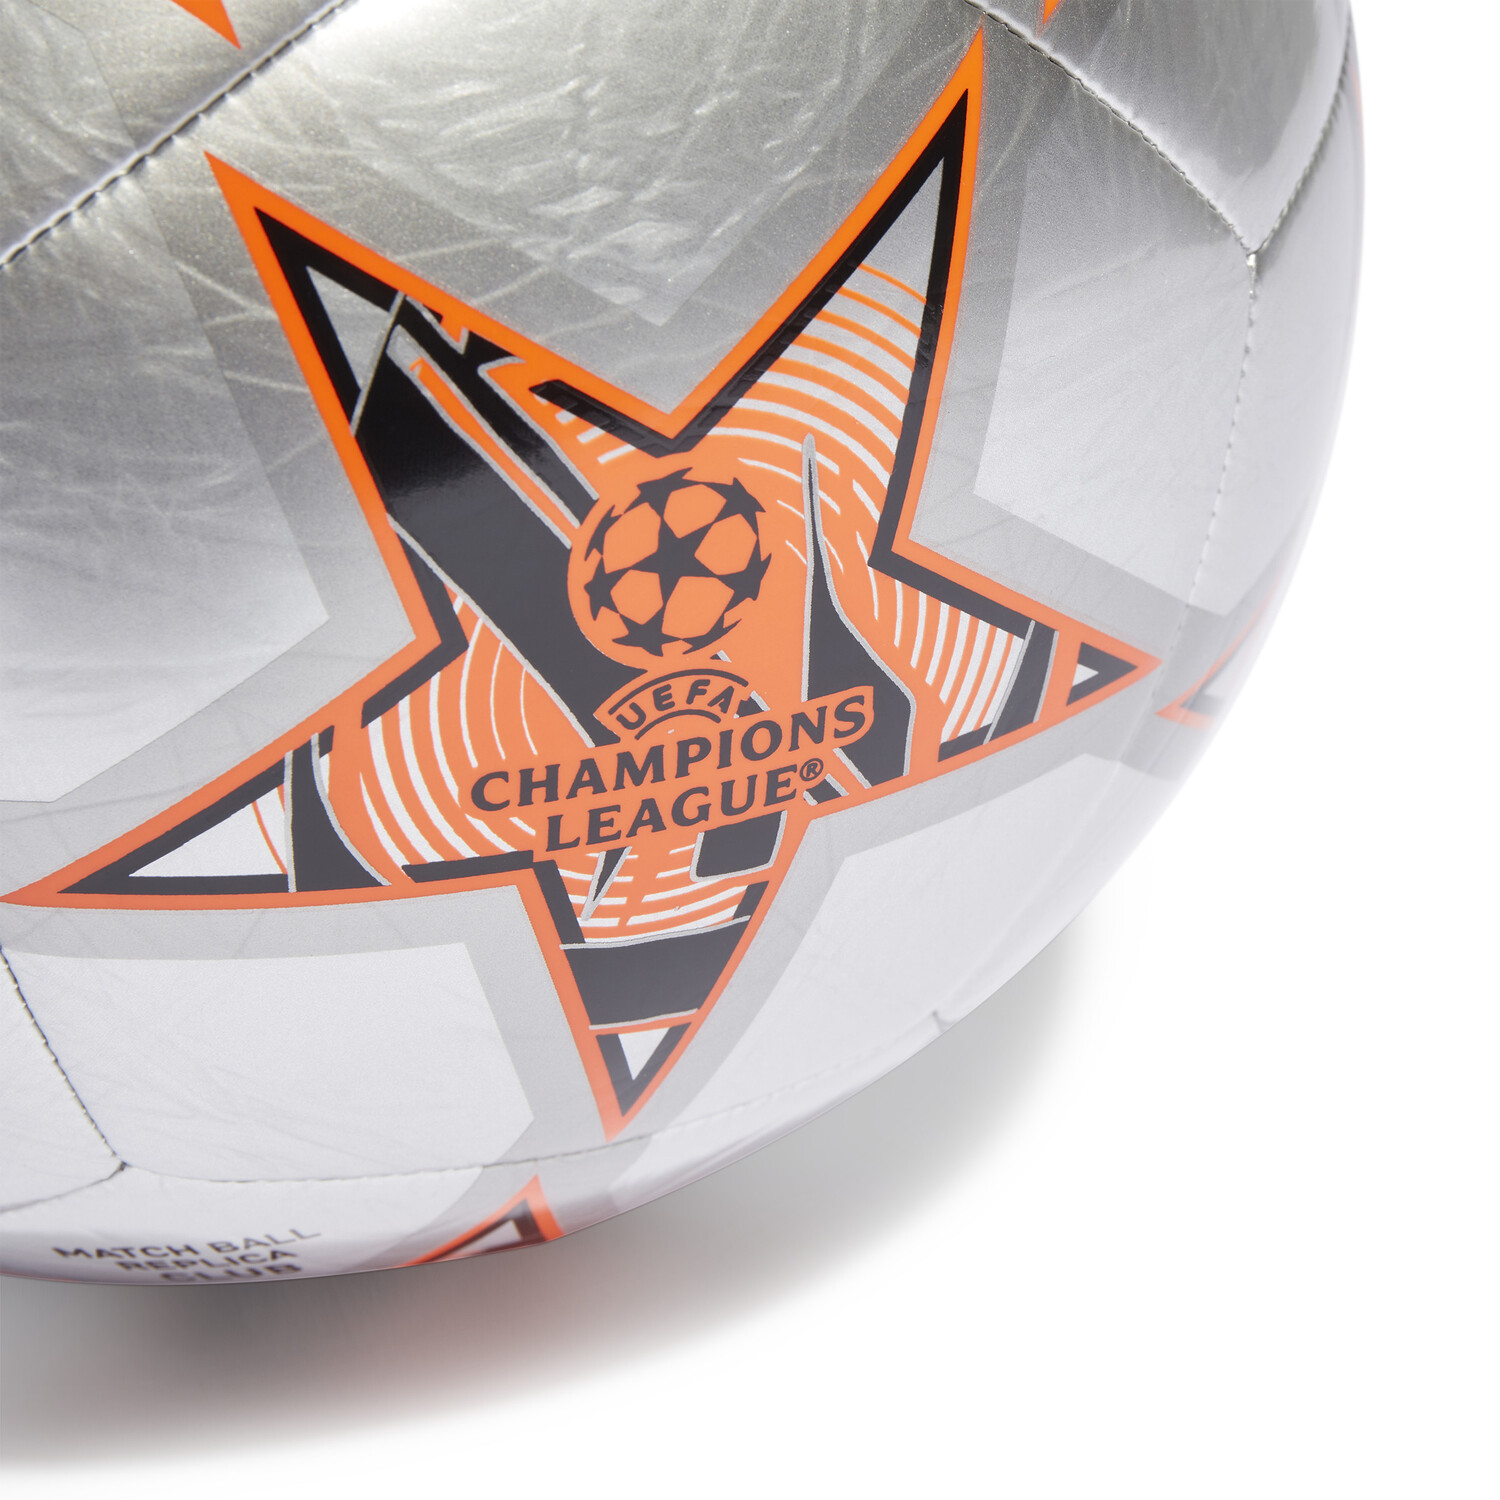 adidas Ballon Euro 2024 Club - orange/noir (Taille 5)